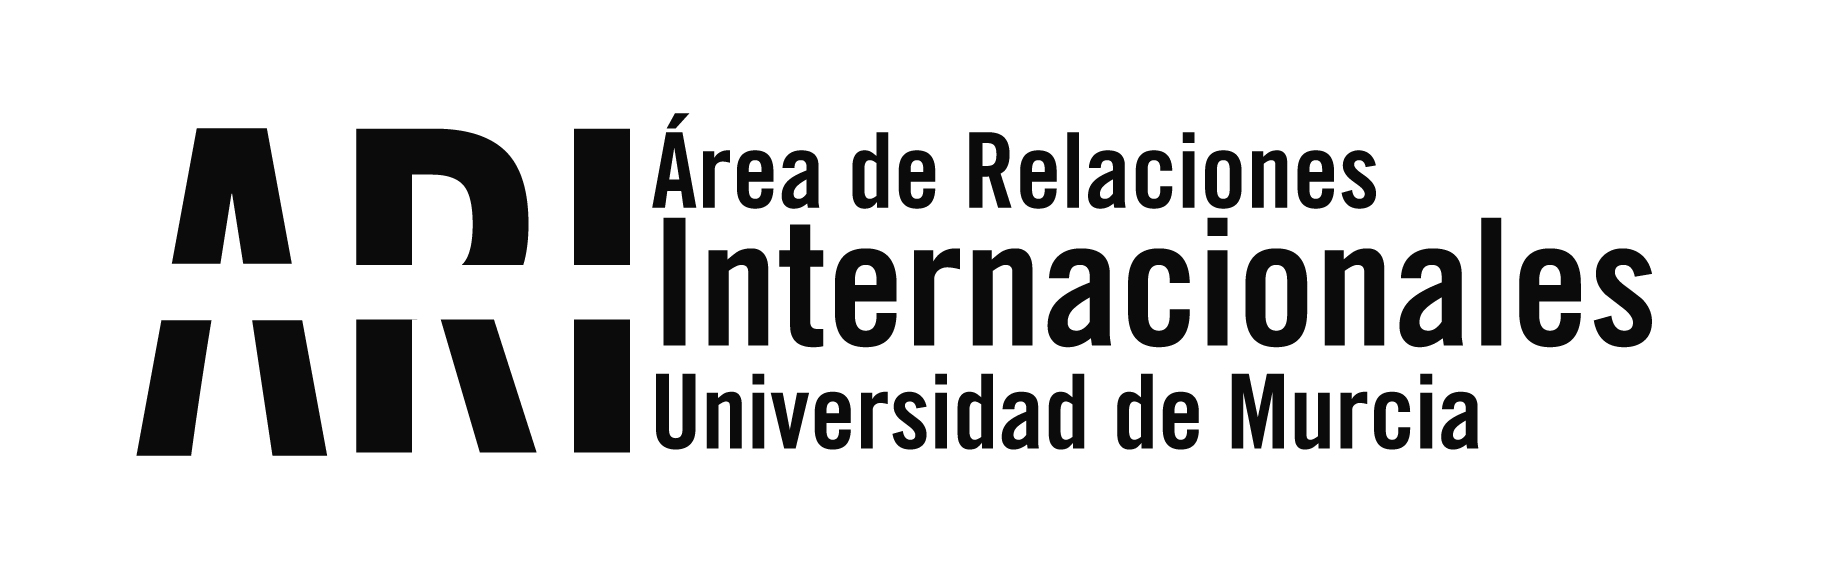 Reunión de Formación del proyecto SATELIT en la Universidad de Cádiz - Área de Relaciones Internacionales